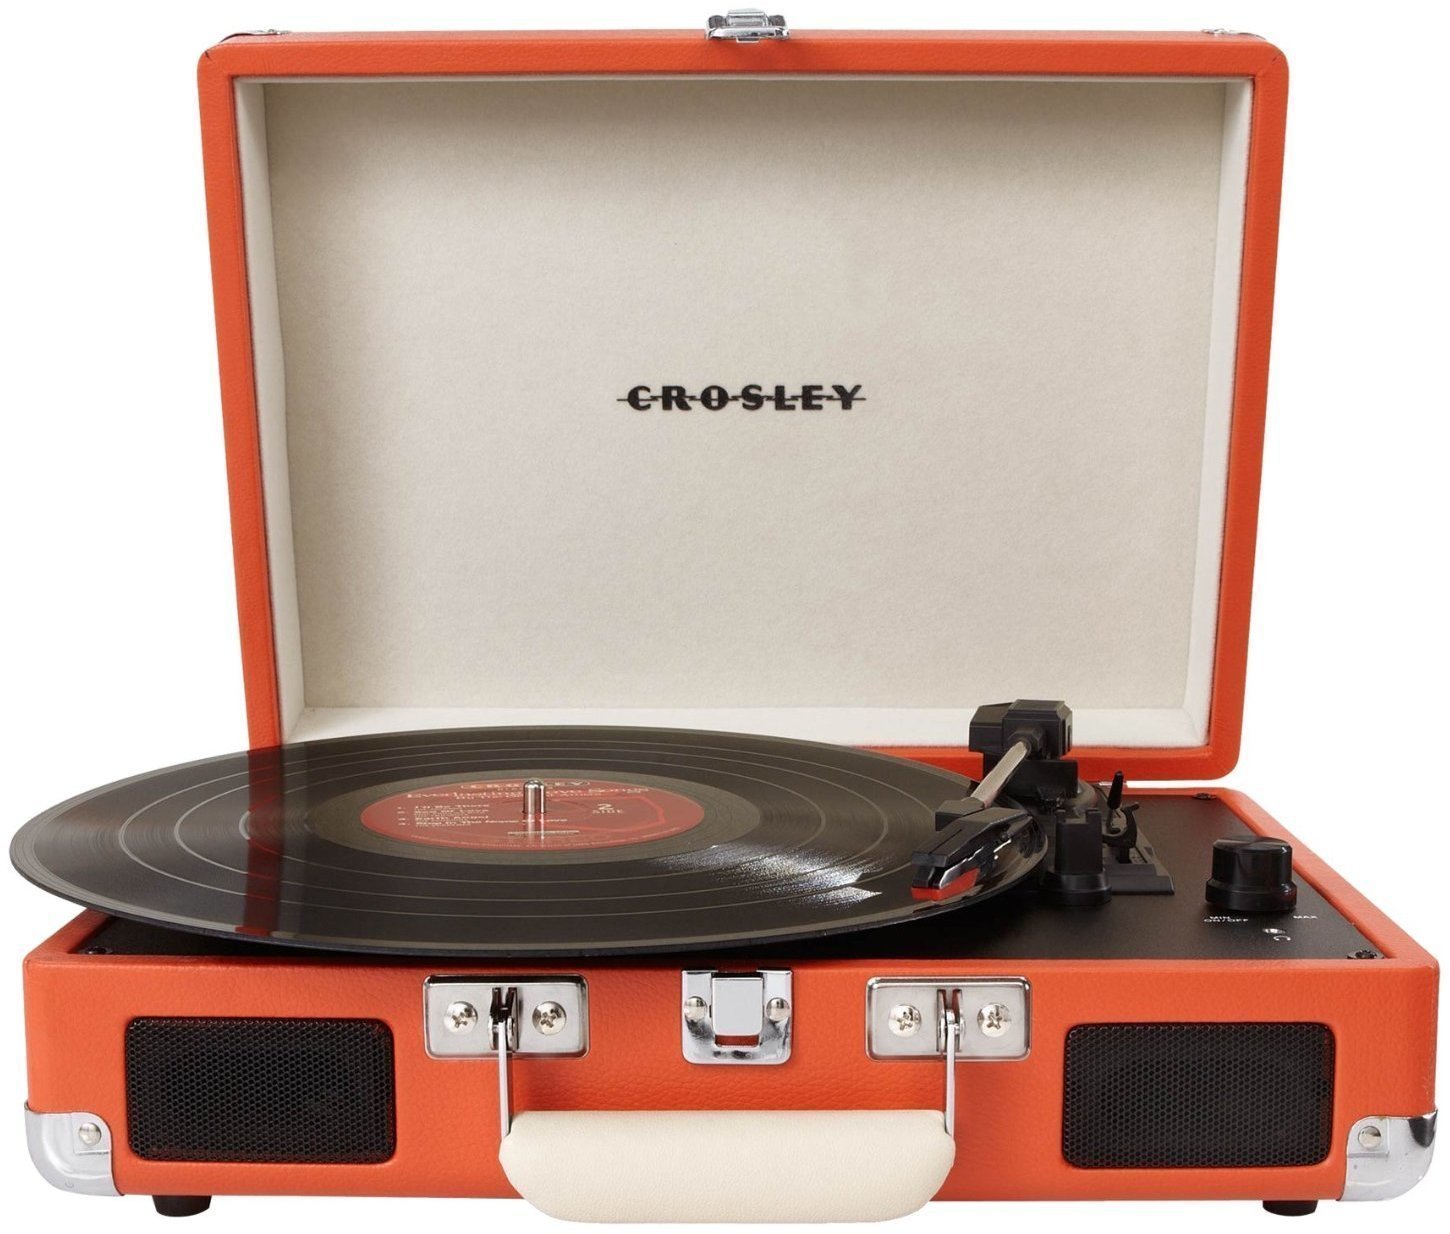 Portable грамофон Crosley Cruiser Deluxe Orange